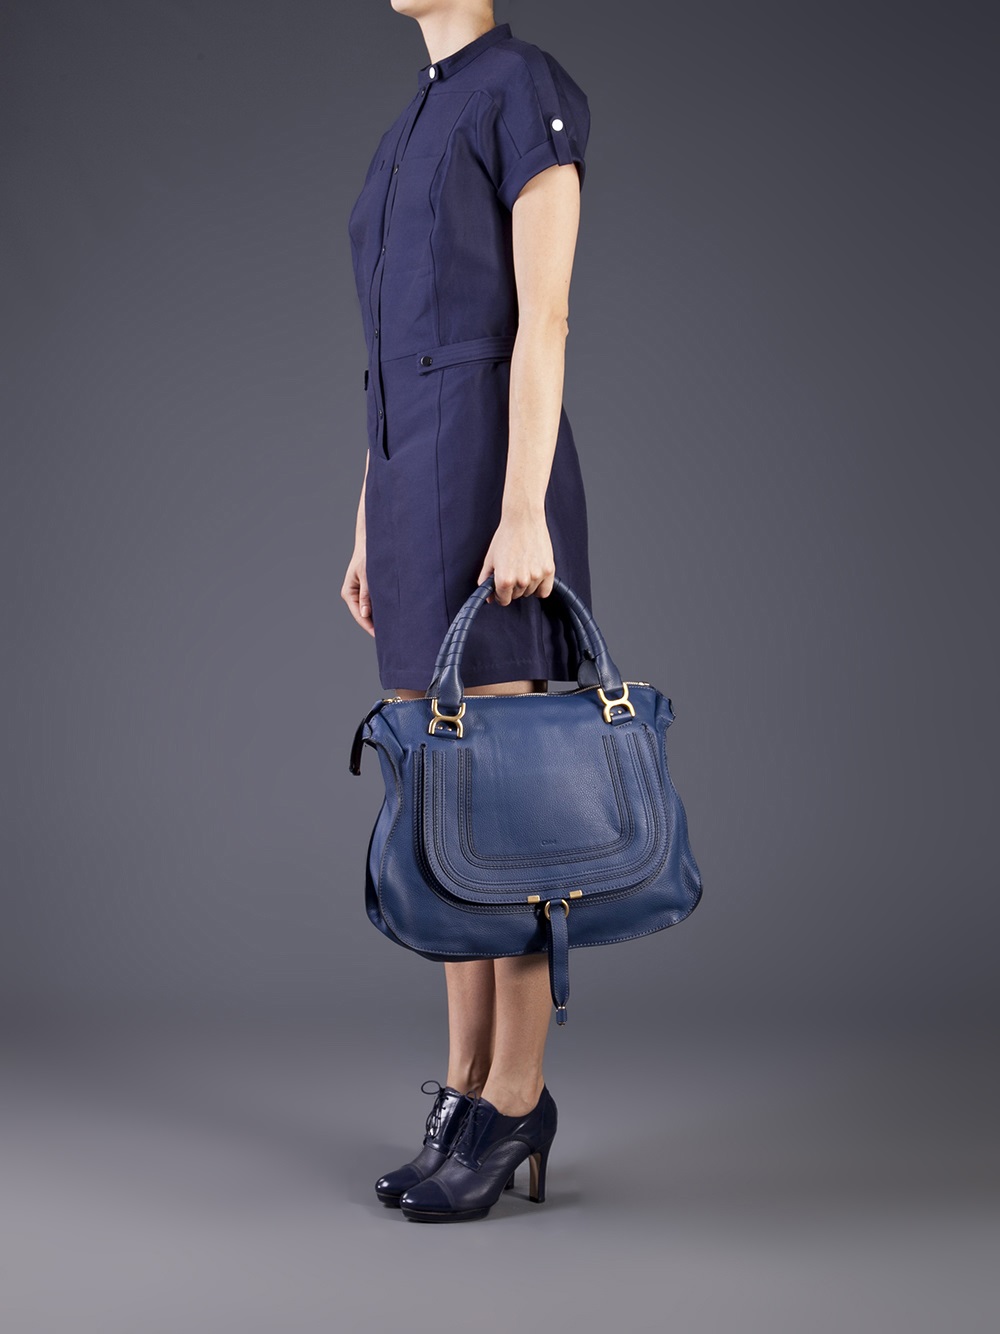 Lyst - Chloé Marcie Bag in Blue